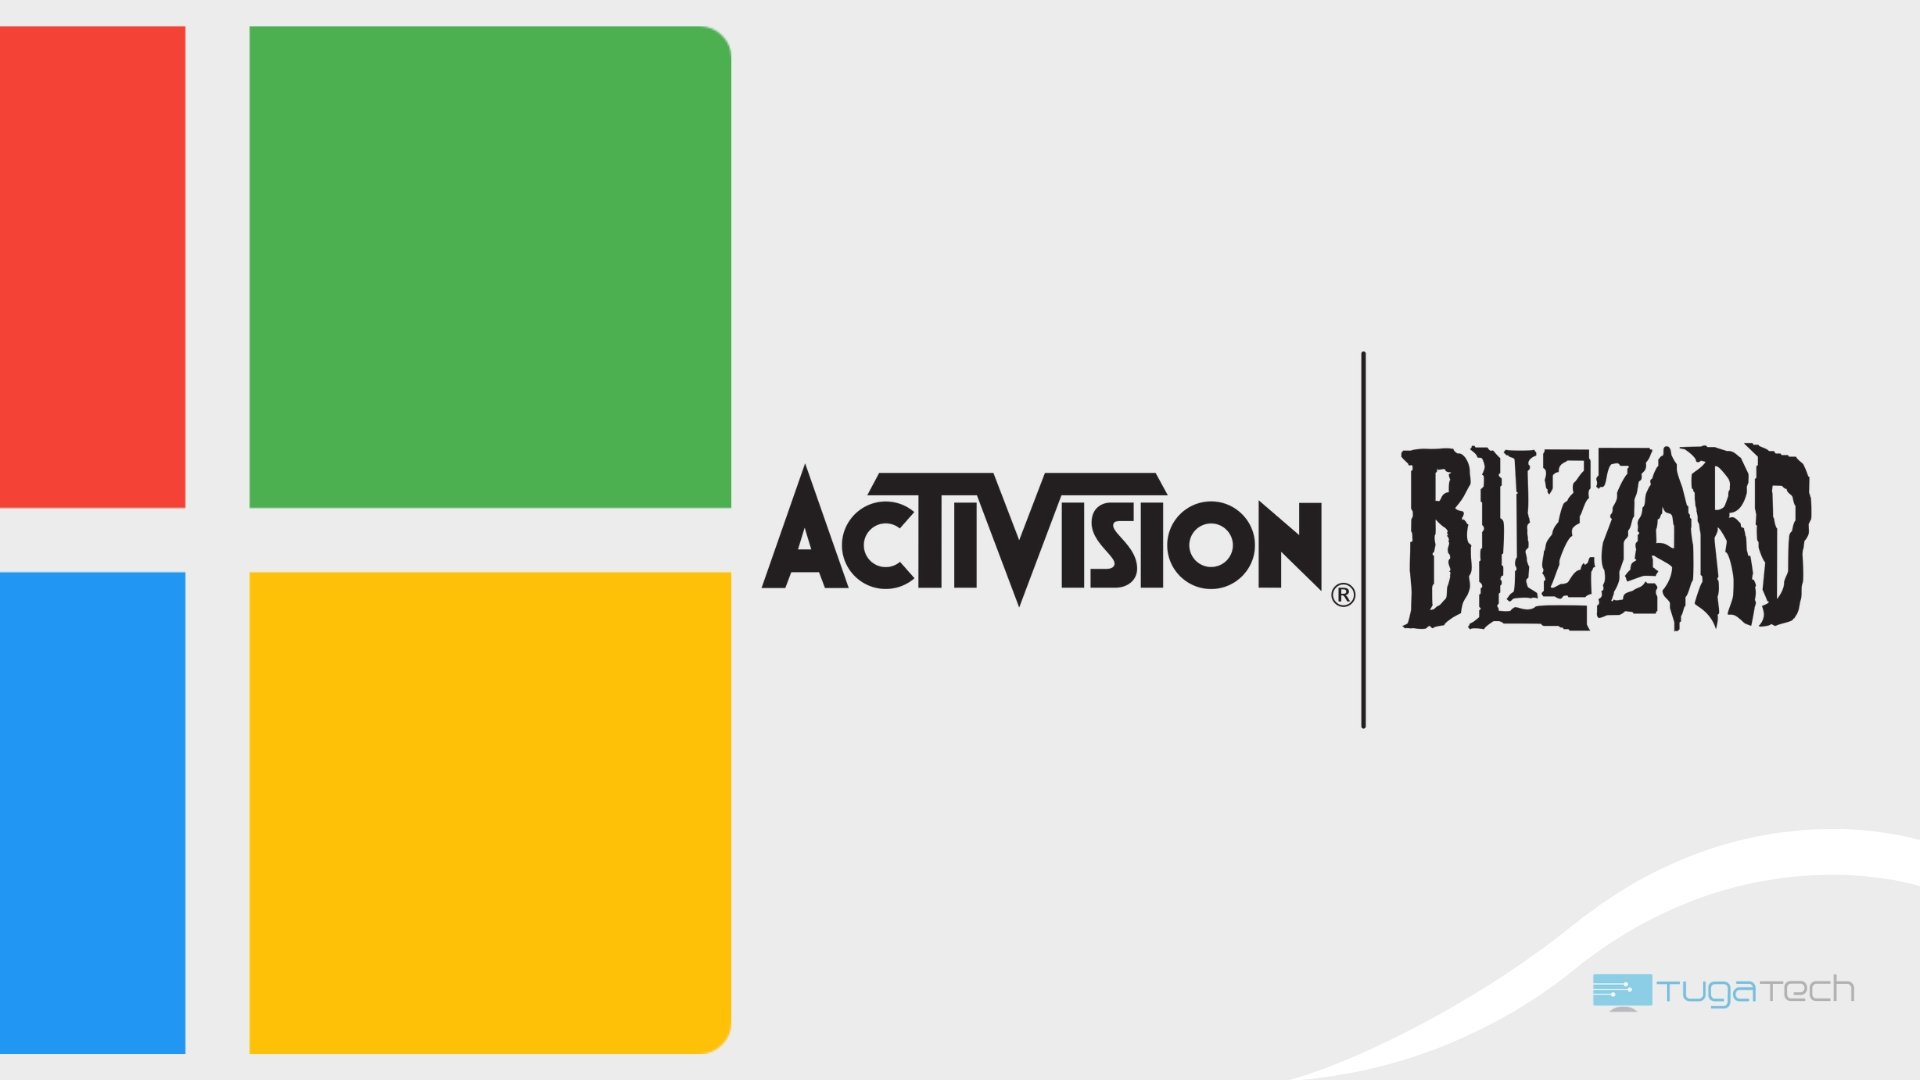 Microsoft e Activision logo na mesma imagem